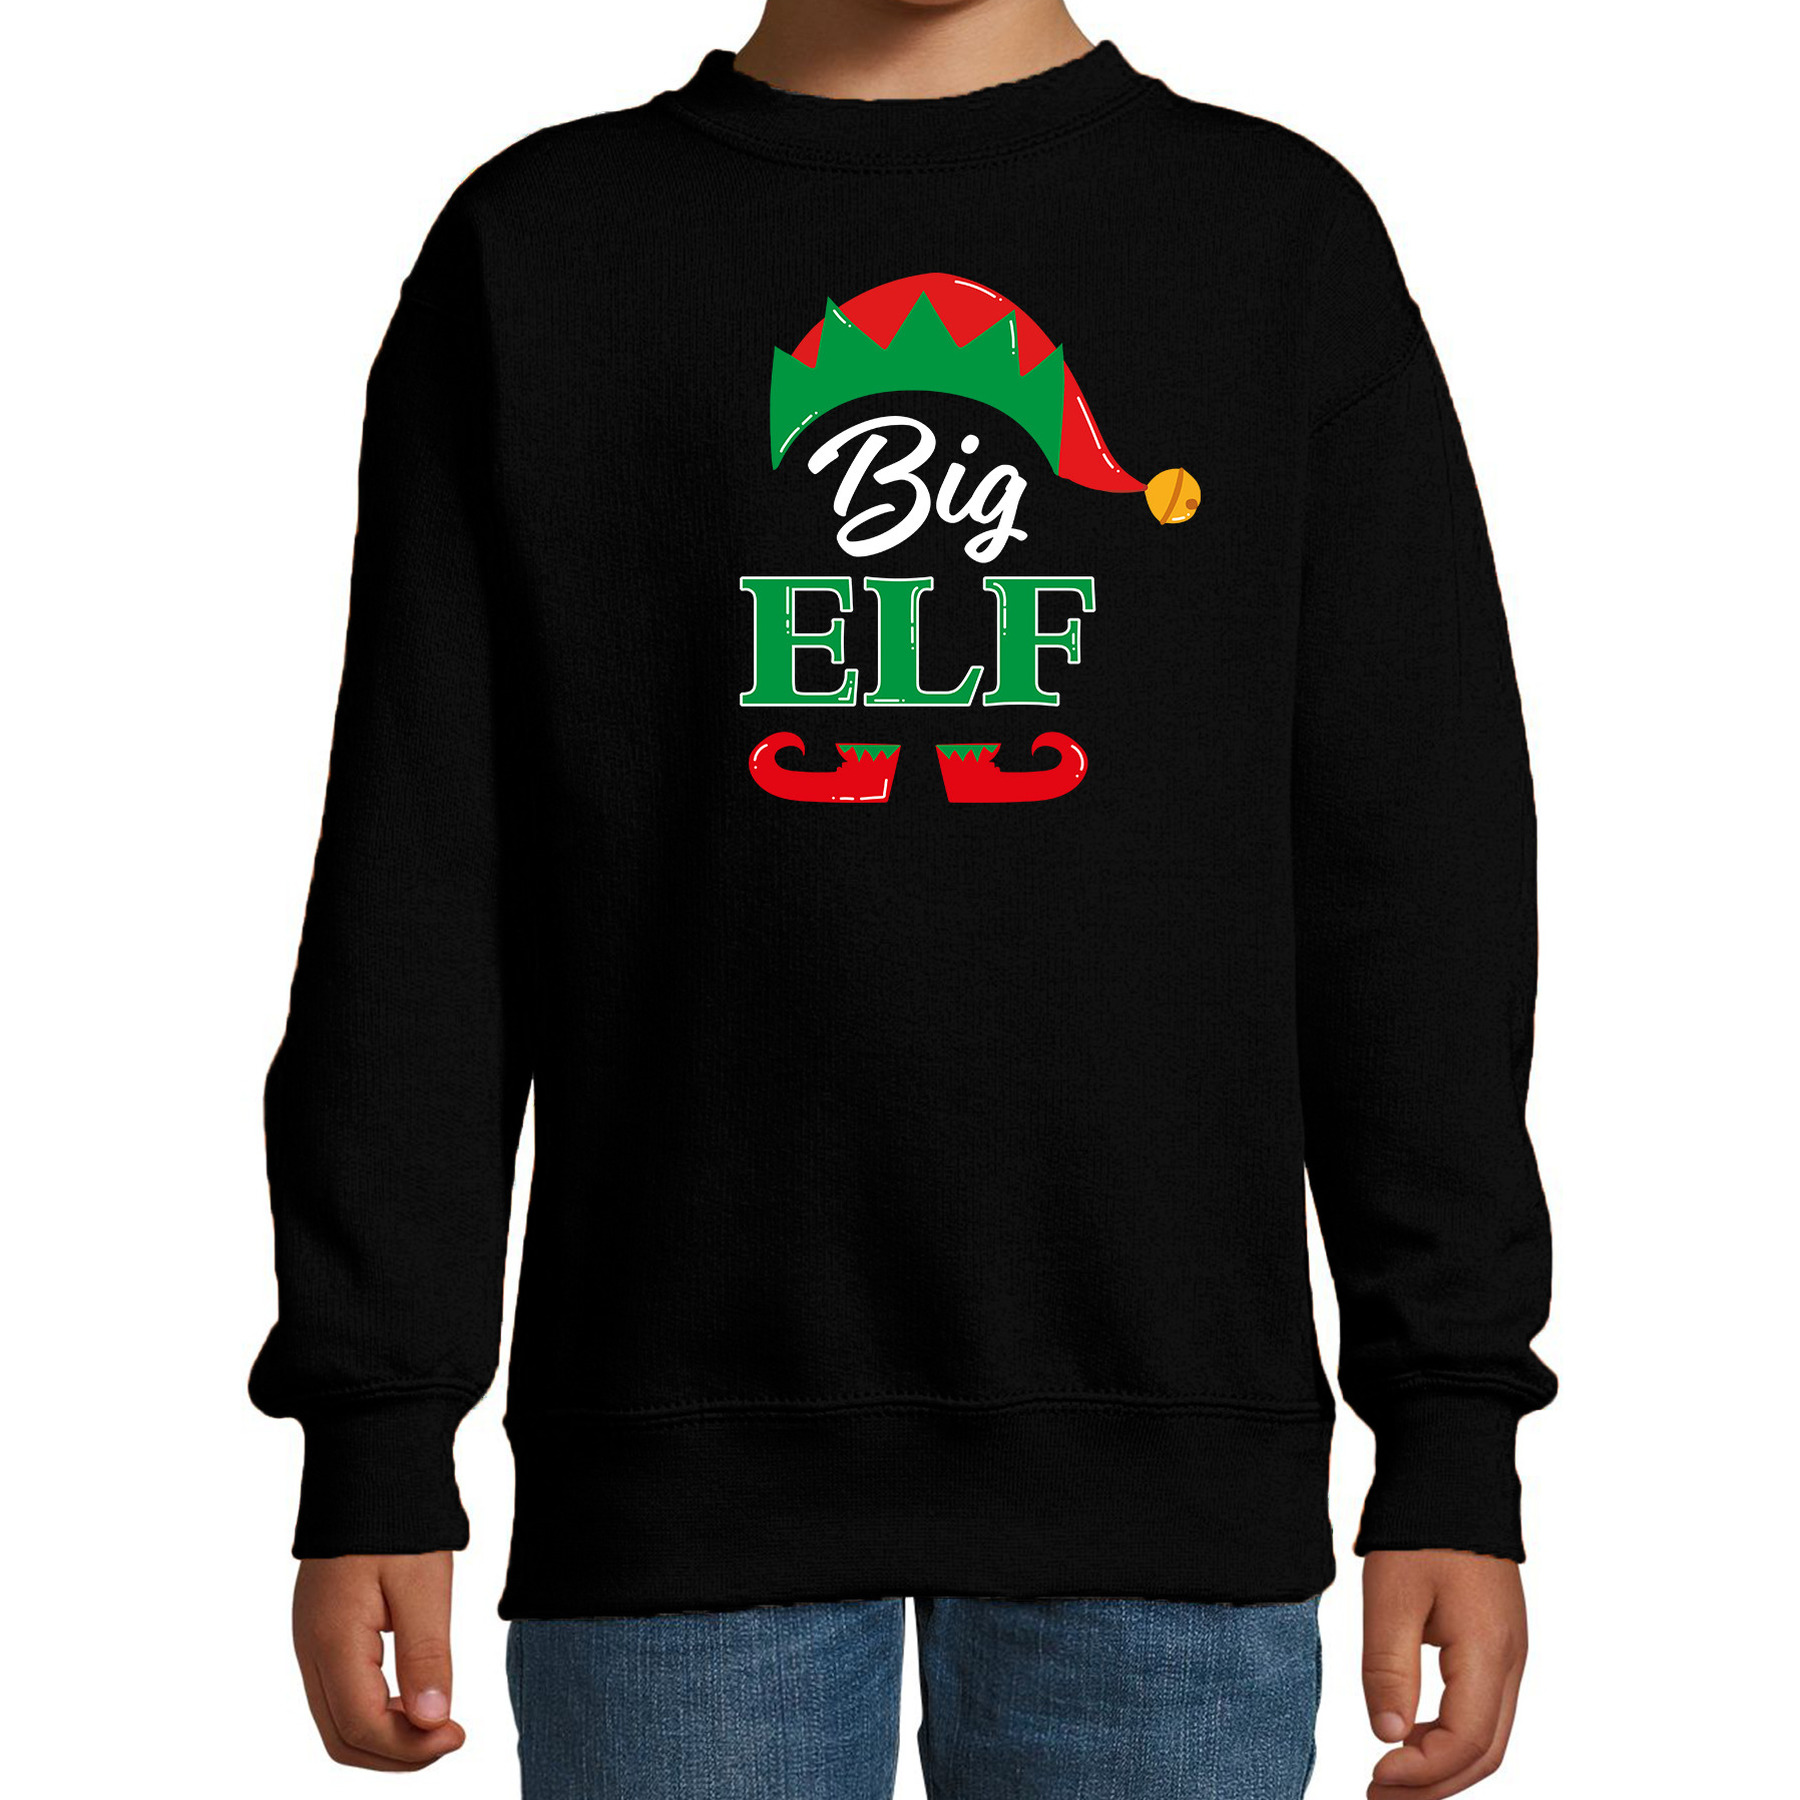 Big elf Kerstsweater - Kersttrui zwart voor kinderen